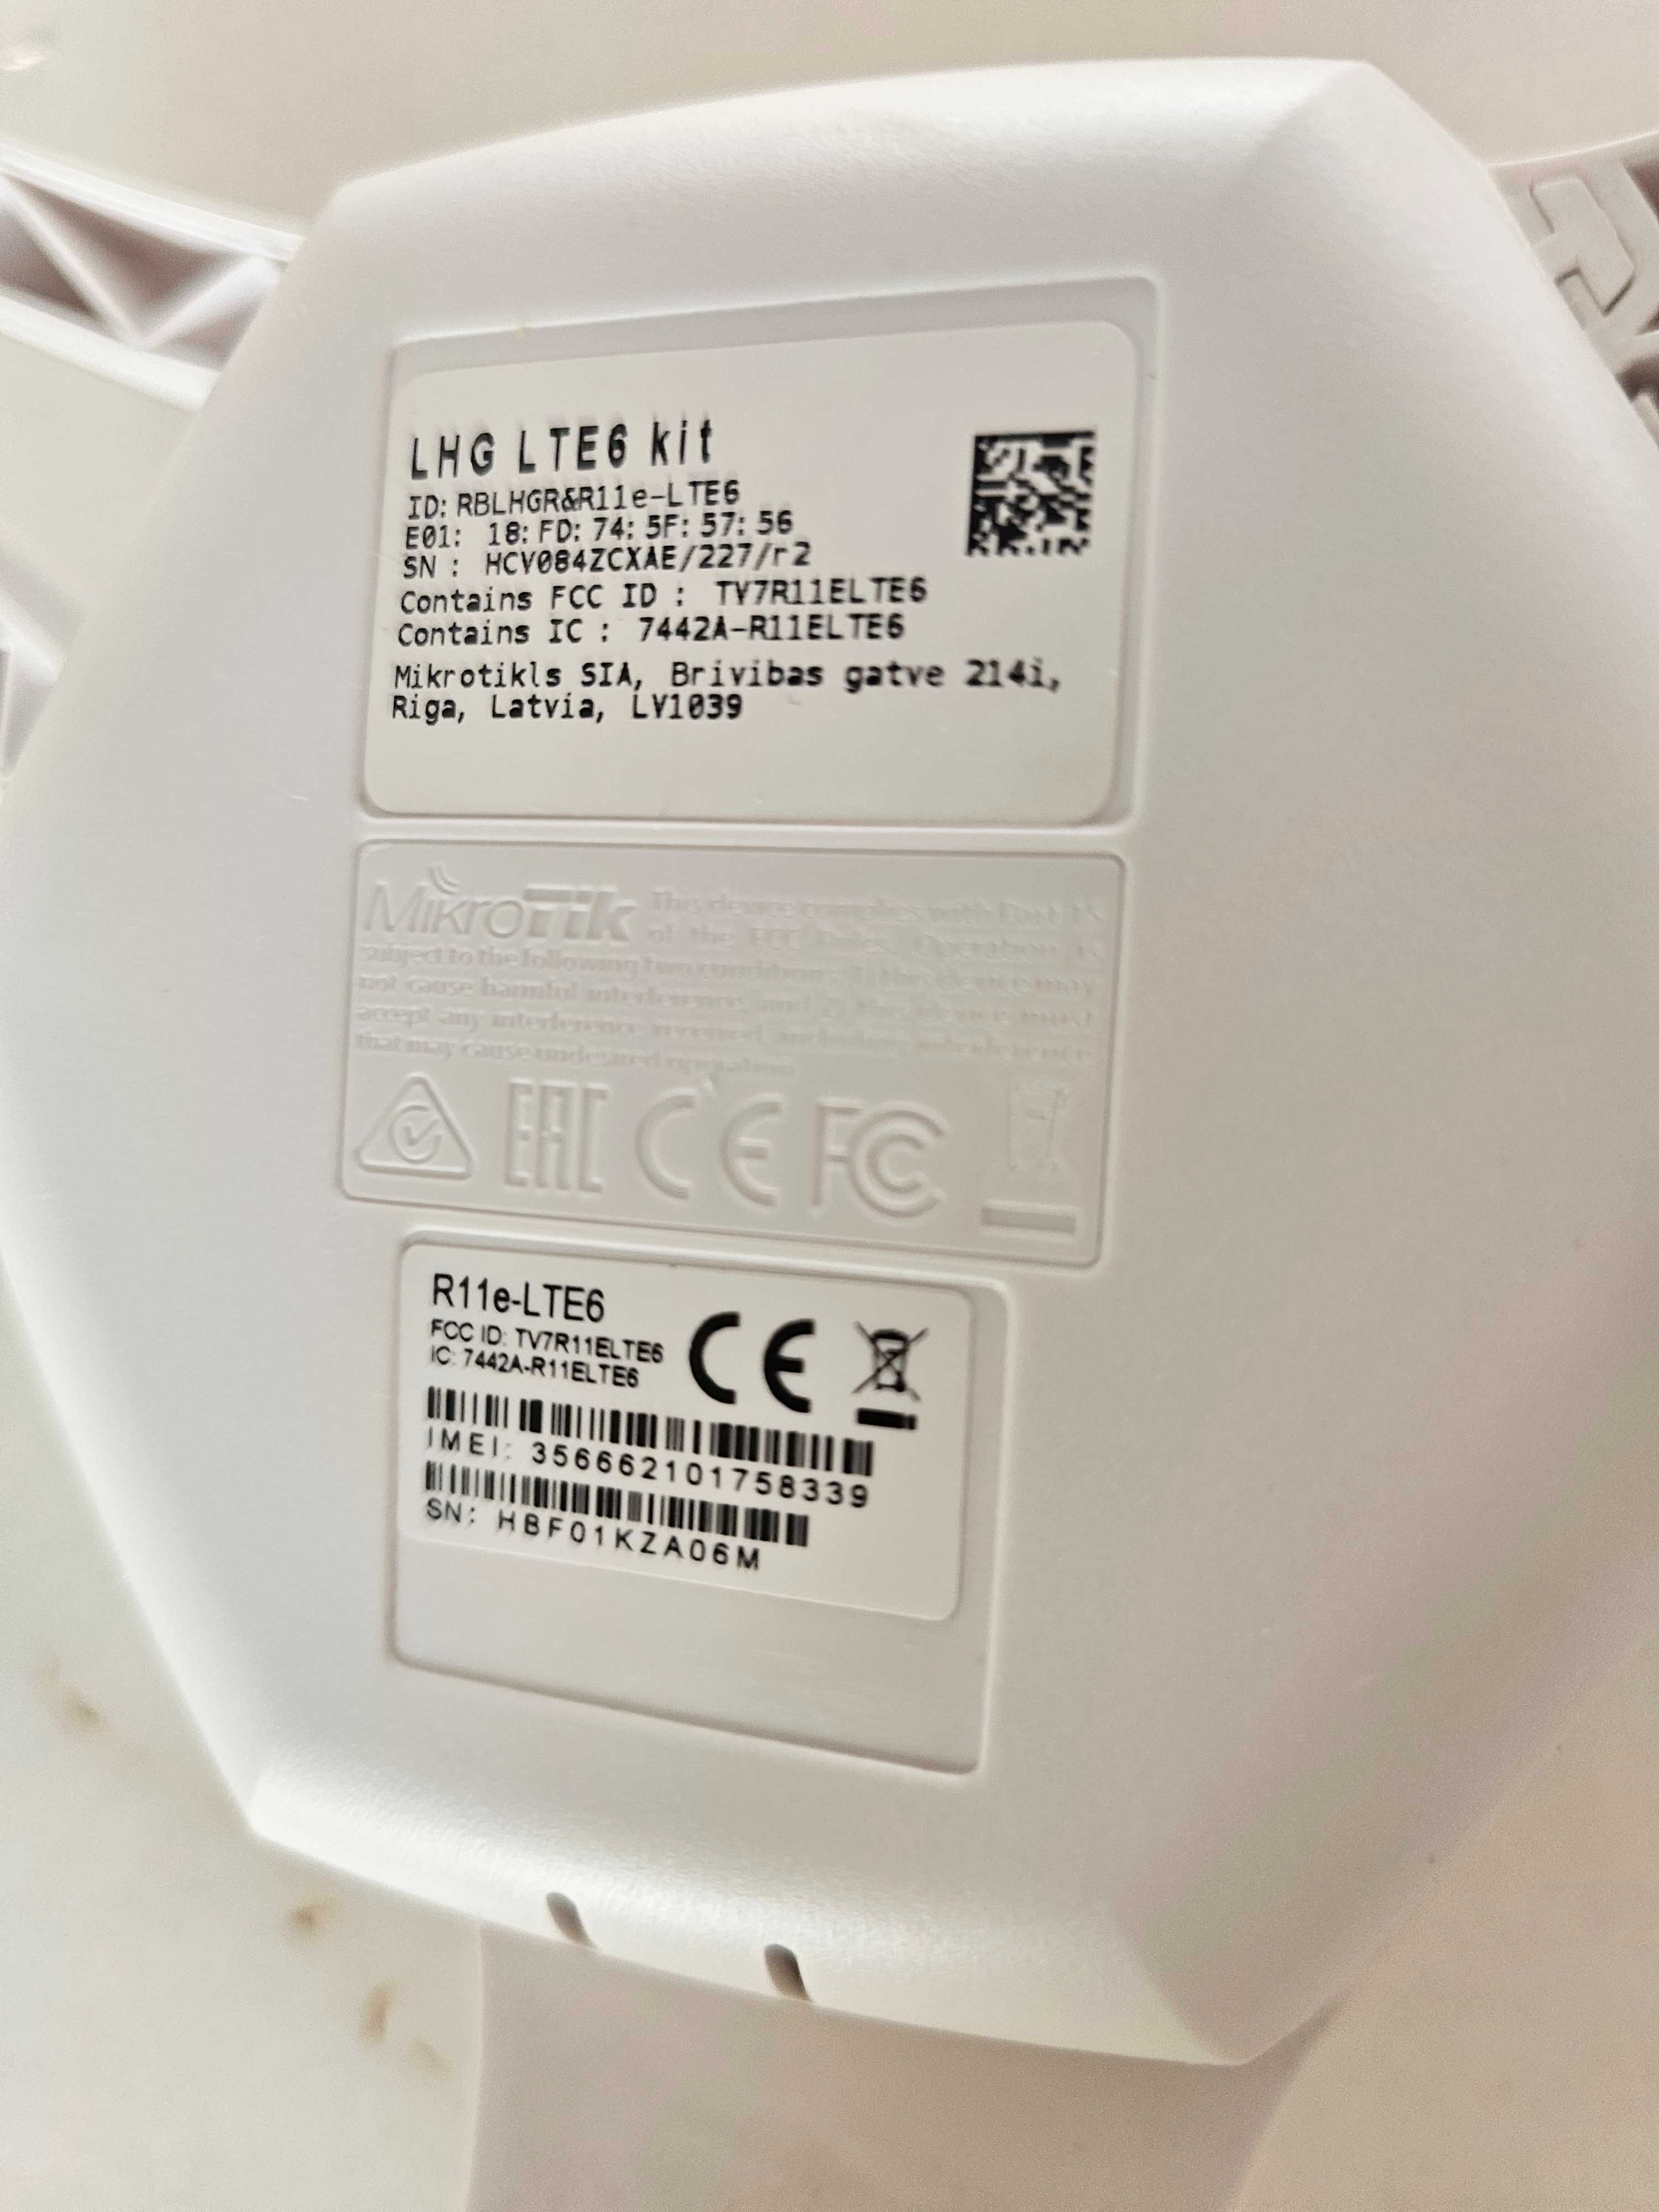 MikroTik LHG LTE6 Kit Antena